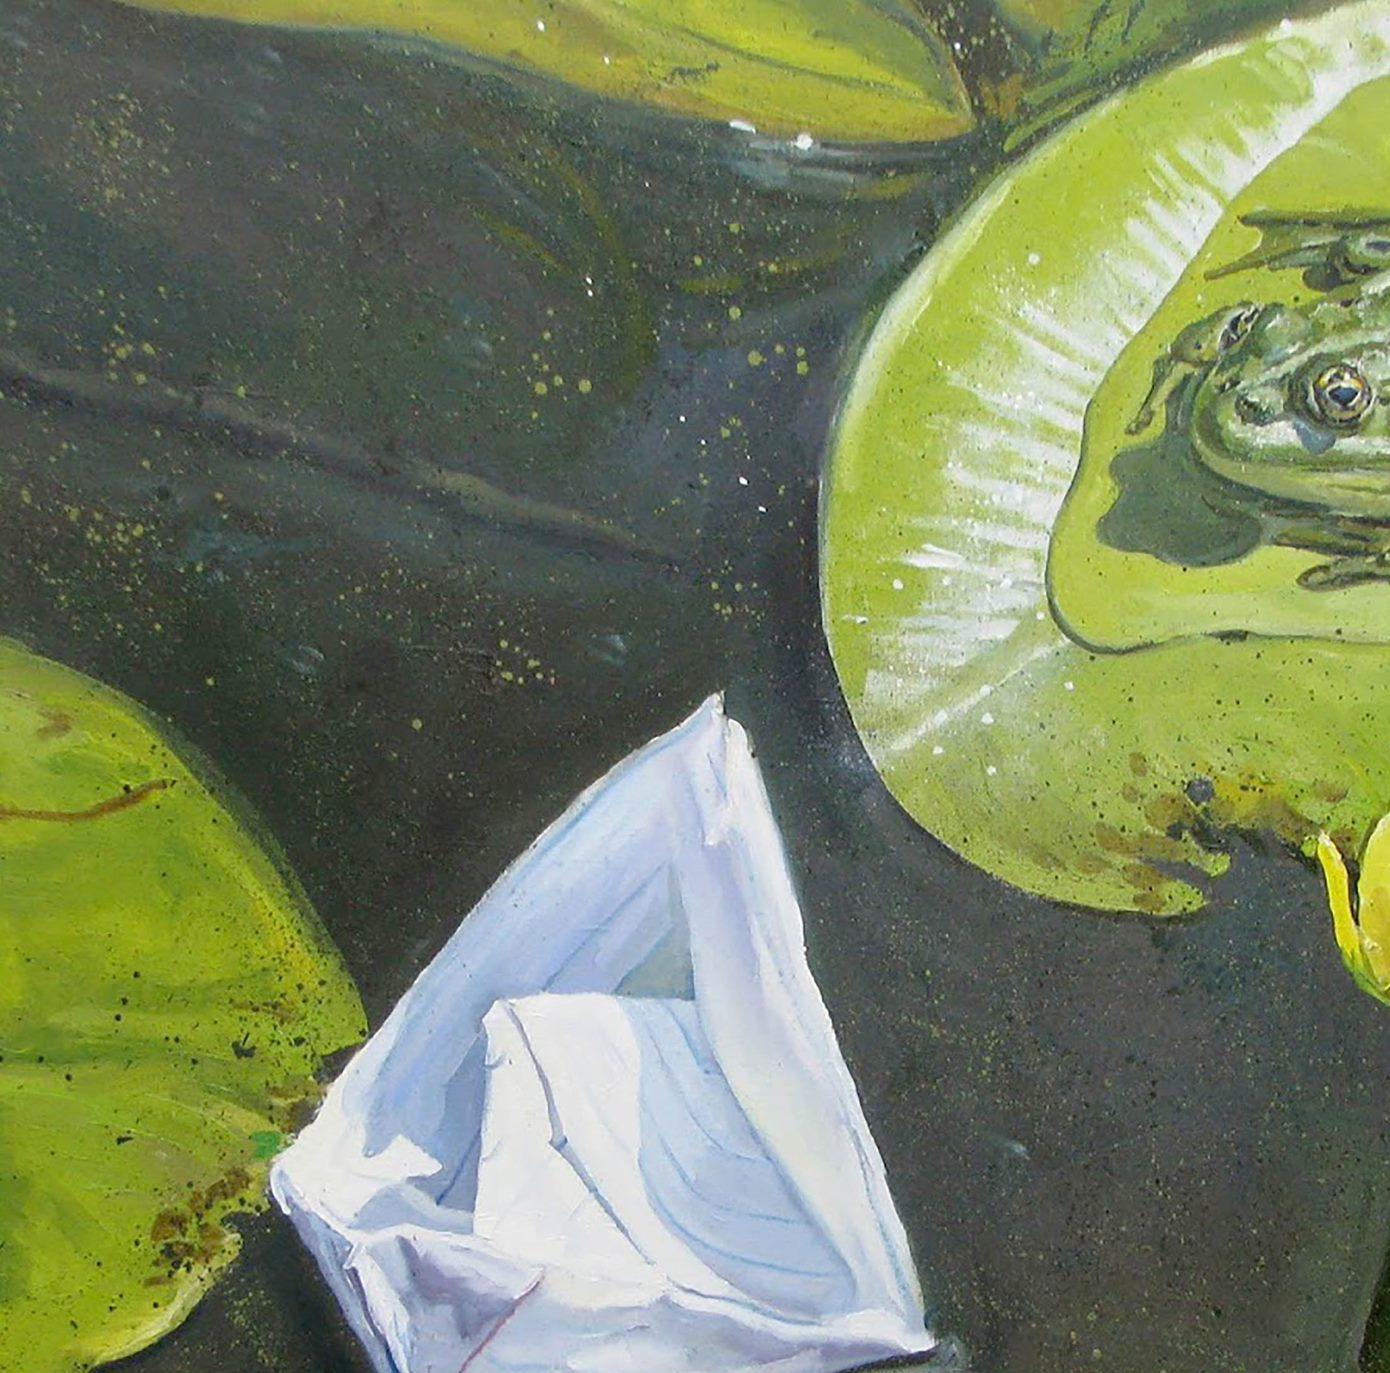 Künstler: Warwarow Anatoli Viktorowitsch
Titel: Ein Treffen,
Größe: 31,5x33,5 Zoll, (80x85 cm)
Medium: Öl auf Leinwand
Handbemalt, original, einzigartig.

Dieses Ölgemälde mit dem Titel 